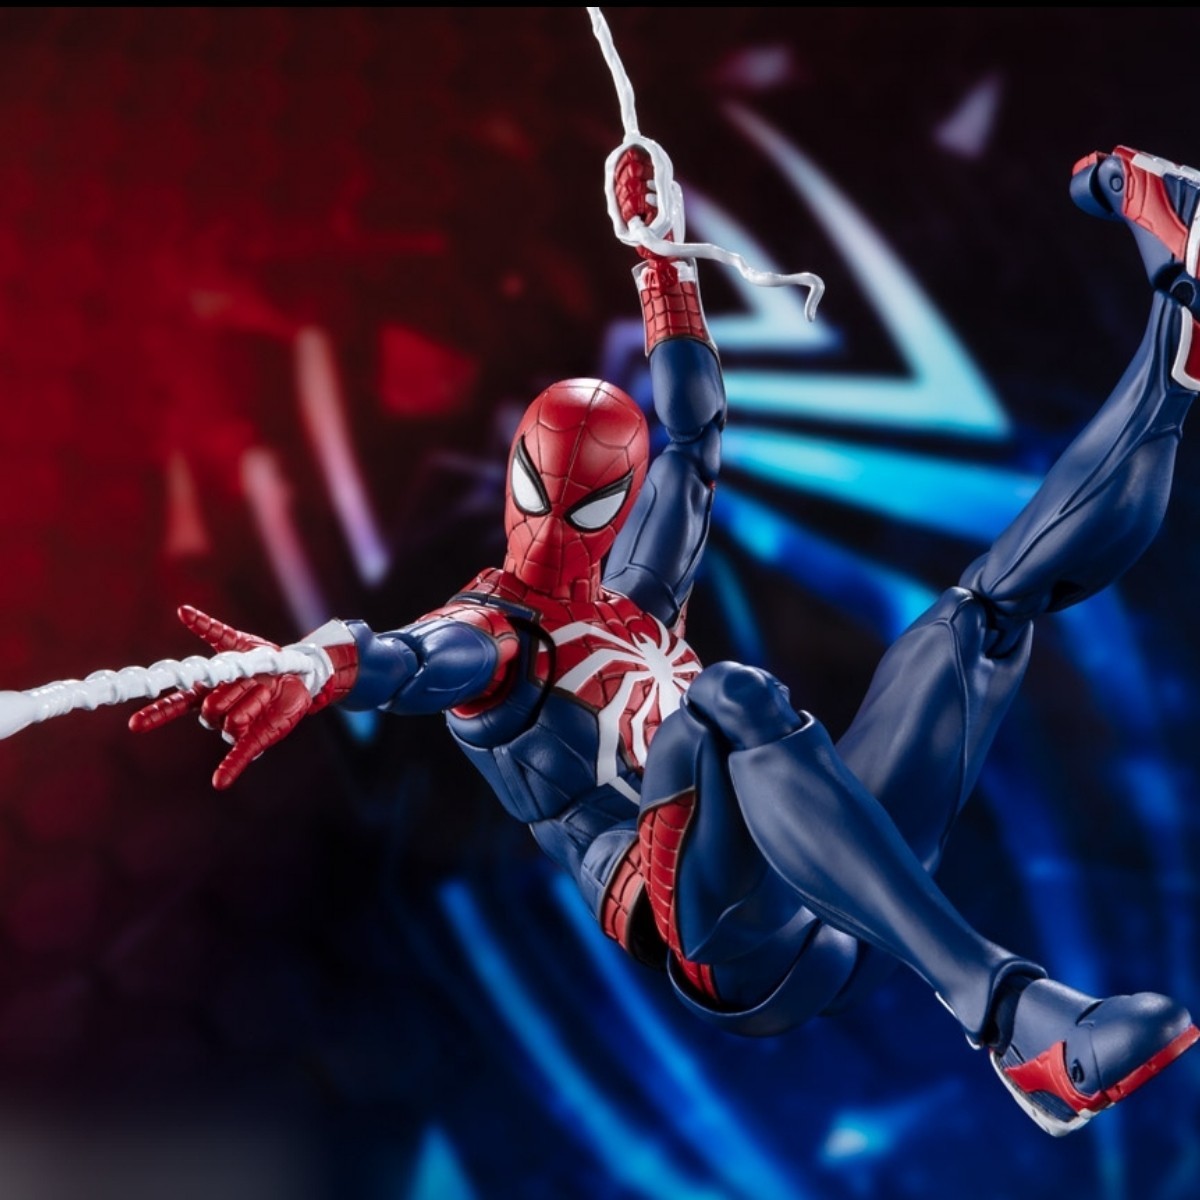 SHフィギュアーツ:スパイダーマン アドバンス・スーツ（Marvel's Spider-Man）